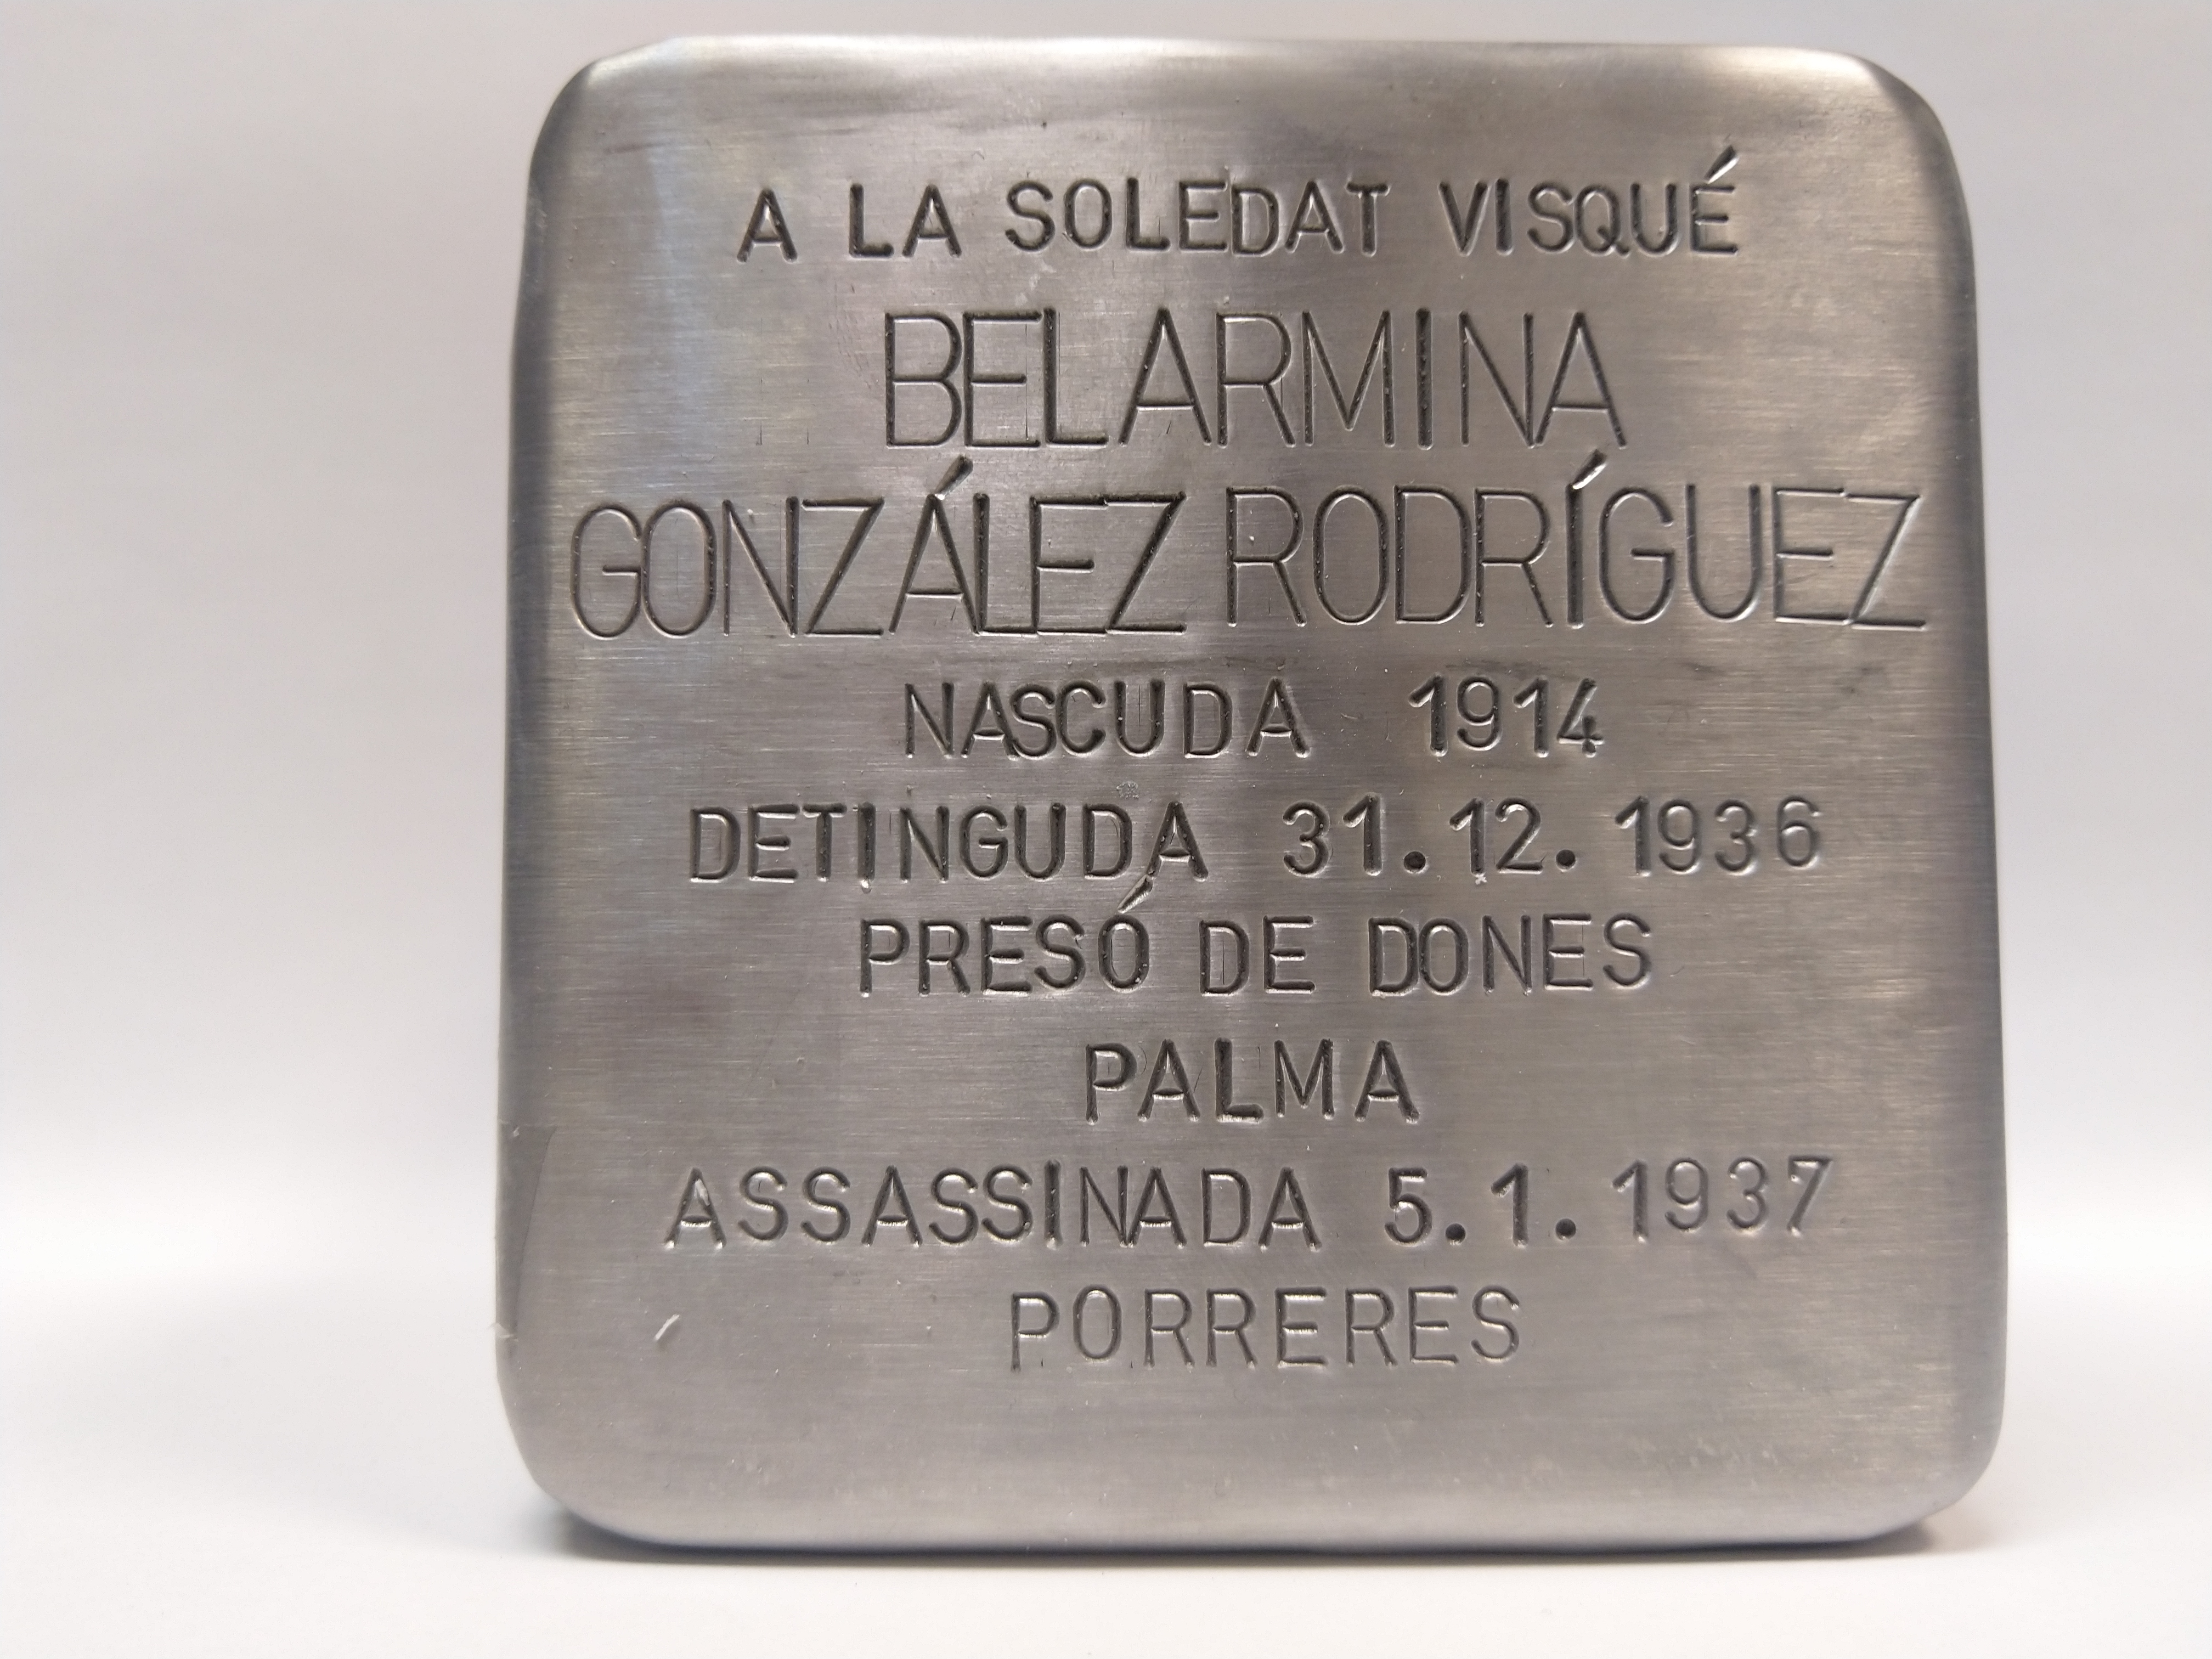 González Rodríguez, Belarmina